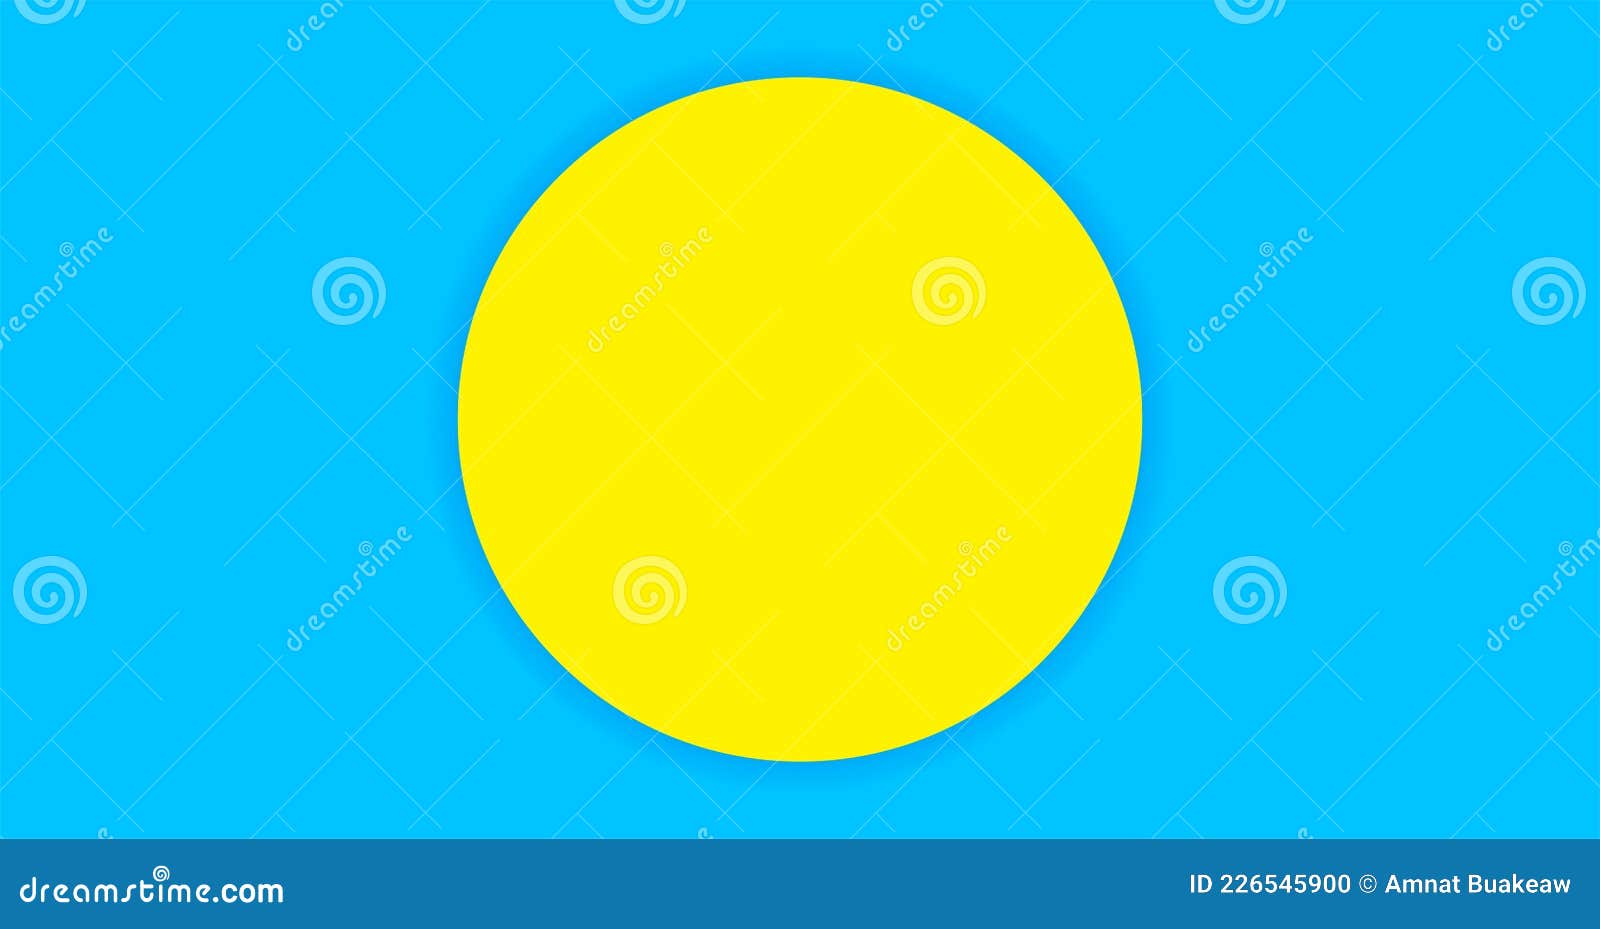 Circle Yellow on Light Blue for Banner Simple Background, Copy ...: Hình tròn đỏ vàng trên nền xanh nhạt thu hút sự chú ý của bạn đối với hình ảnh liên quan đến tiêu đề hoặc thông điệp mà bạn muốn truyền tải. Với màu sắc tươi tắn và đơn giản, hình ảnh sẽ thu hút và nổi bật hơn.